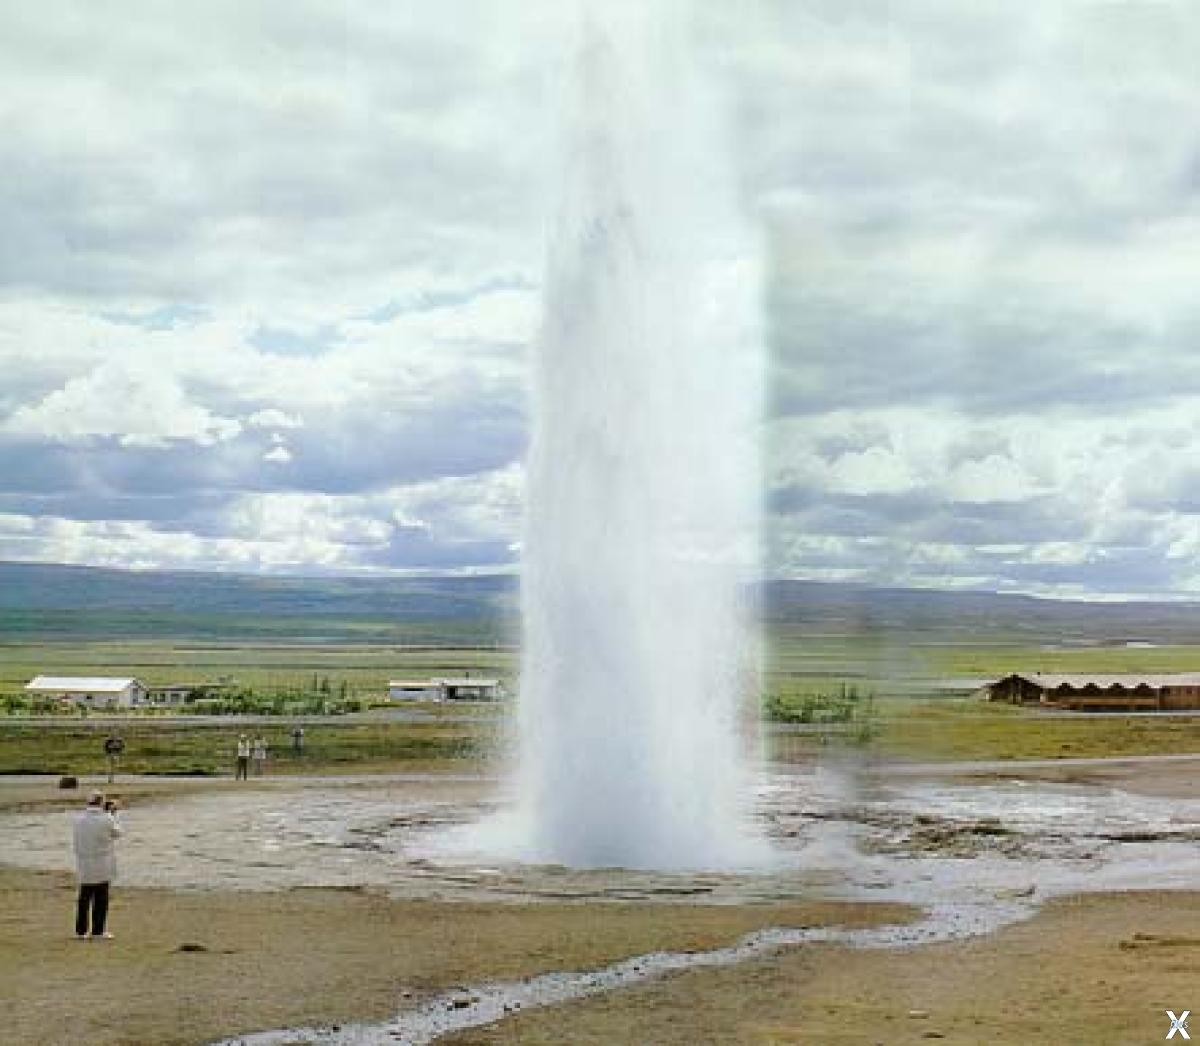 Вода гейзеров исландии содержит следующие ионы